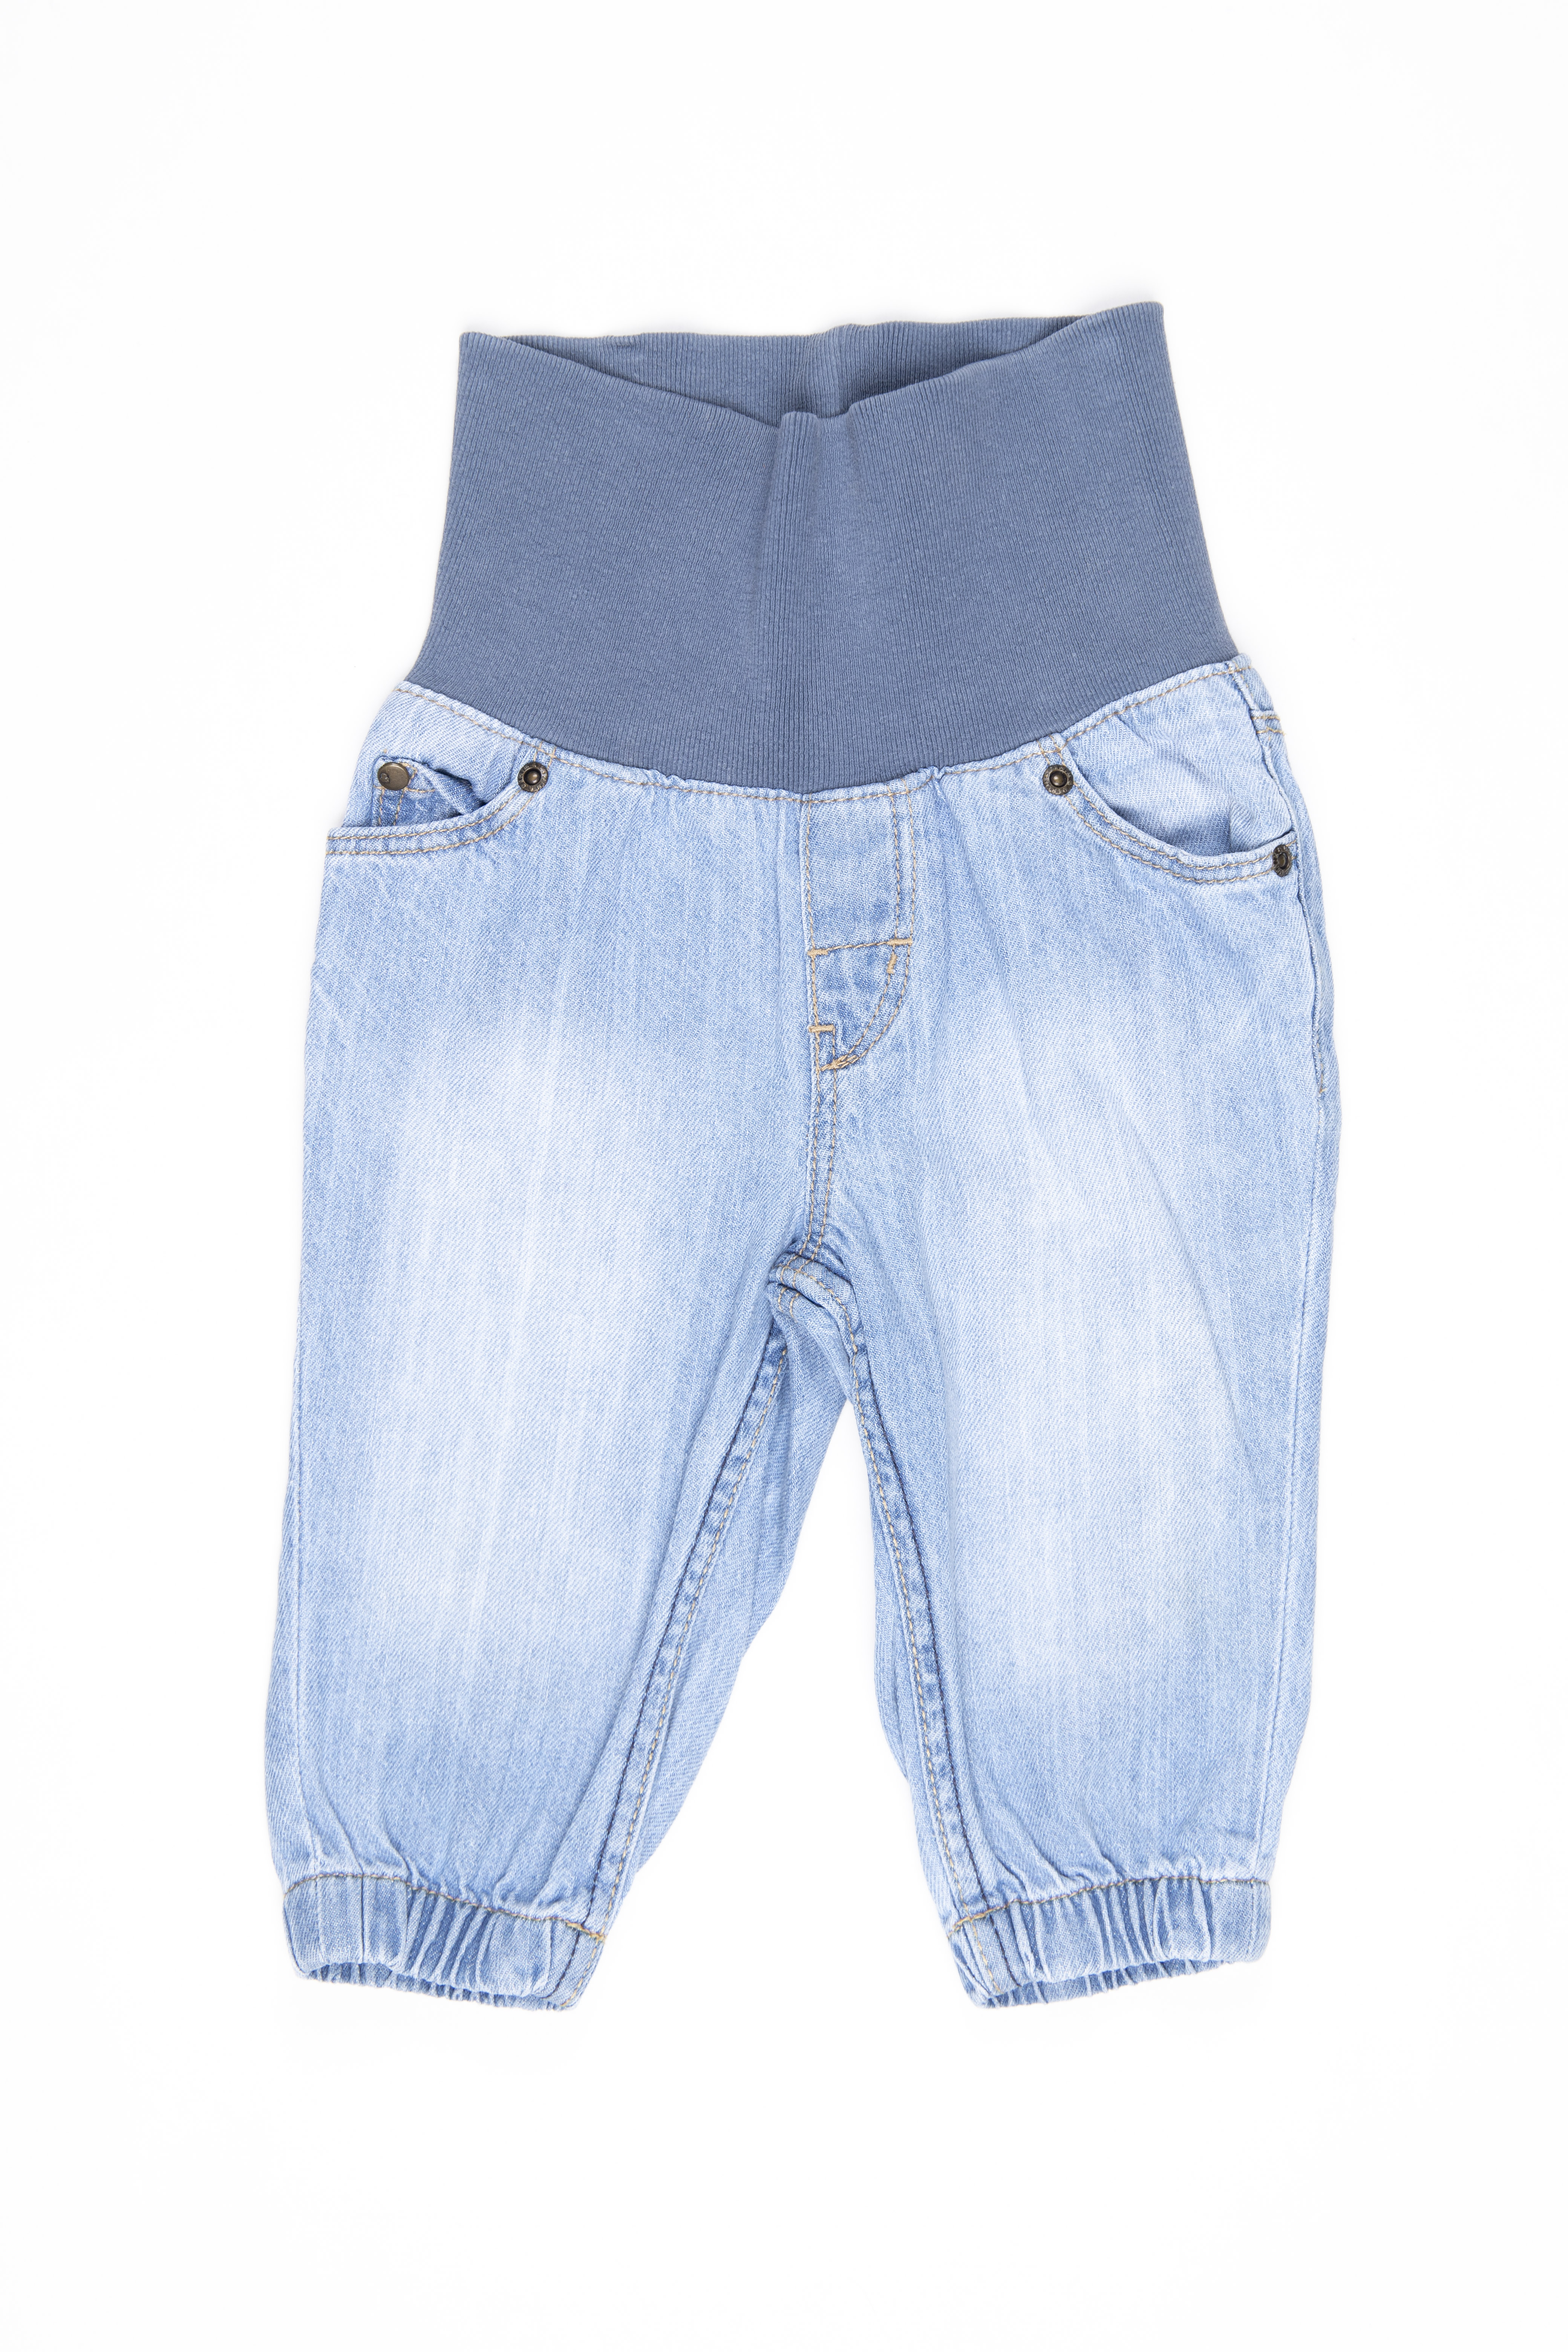 Jean con cintura rib ancha y elástico en tobillos 100% algodón - H & M